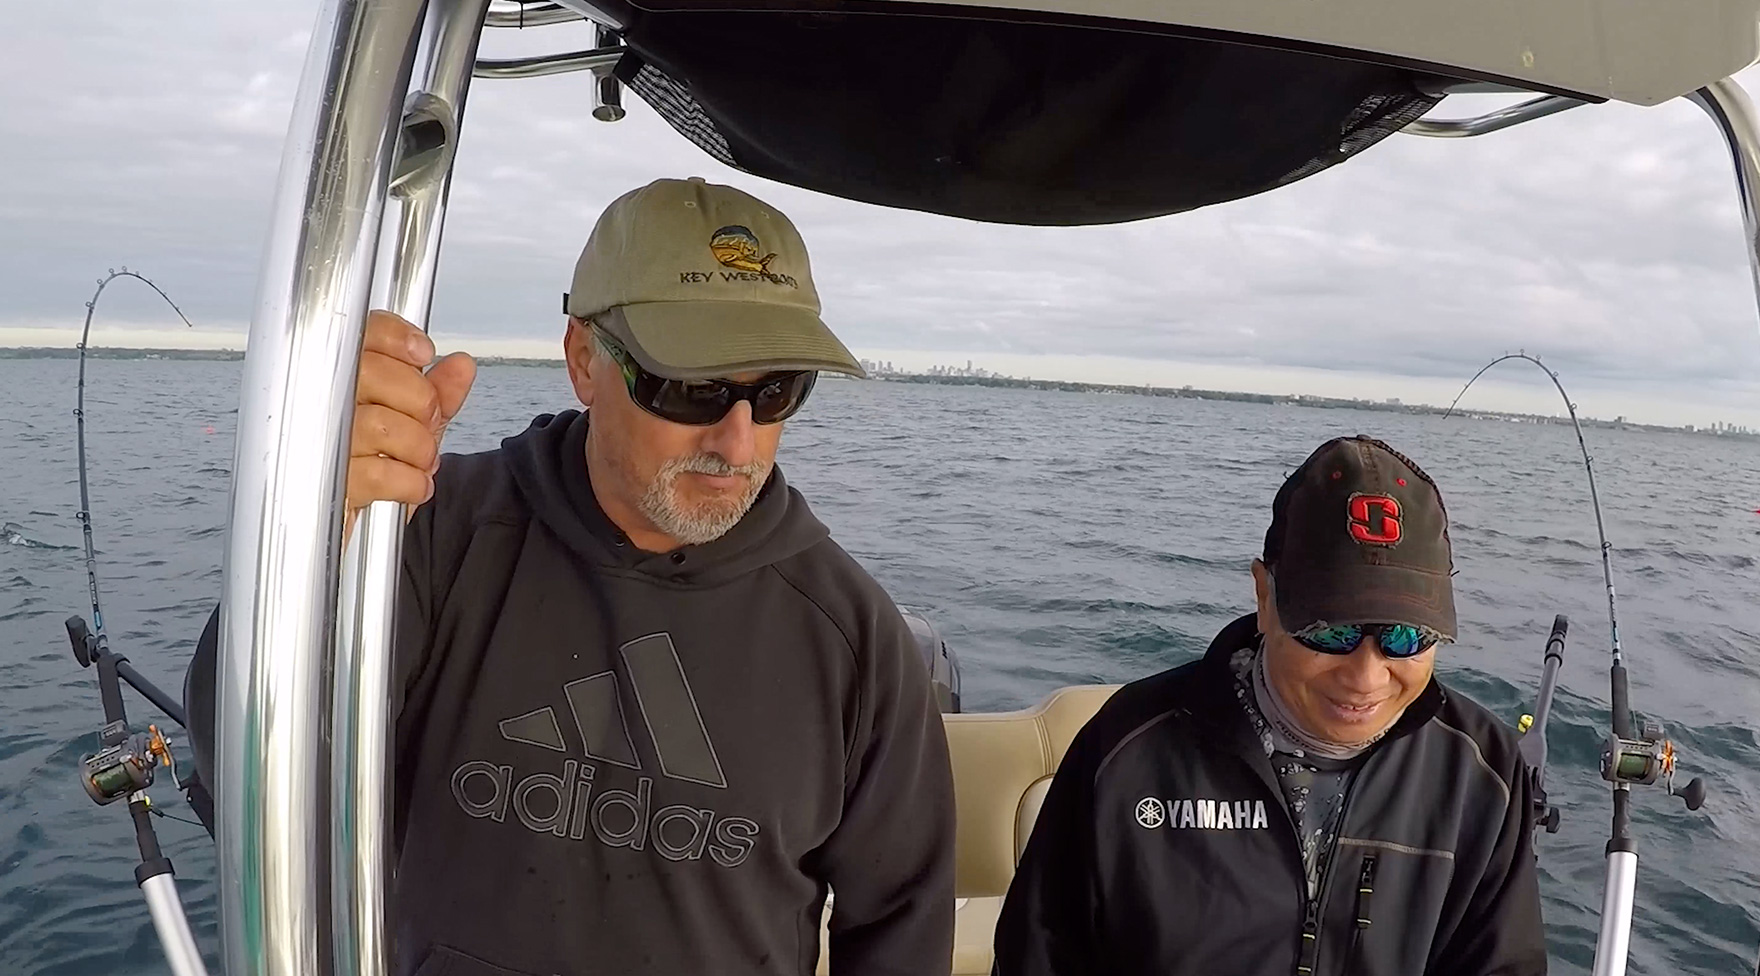 Thumbnail image of Scott Morrow and David Chong on the water, fishing. Click to see David Chong’s testimonial video.